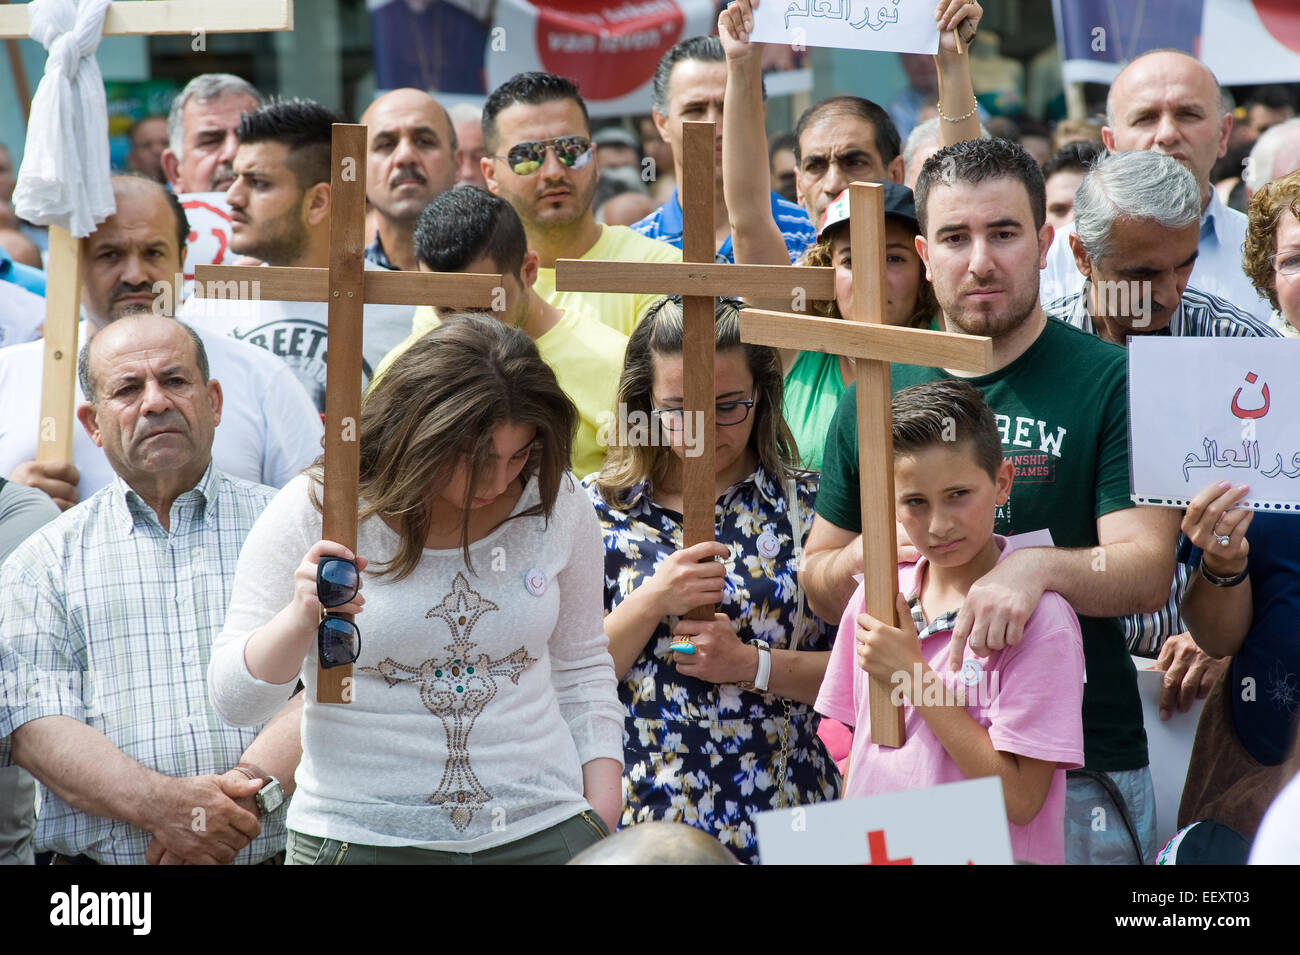 Une minute de silence au cours d'une manifestation organisée par suryoye les chrétiens contre le massacre des chrétiens en Irak Banque D'Images